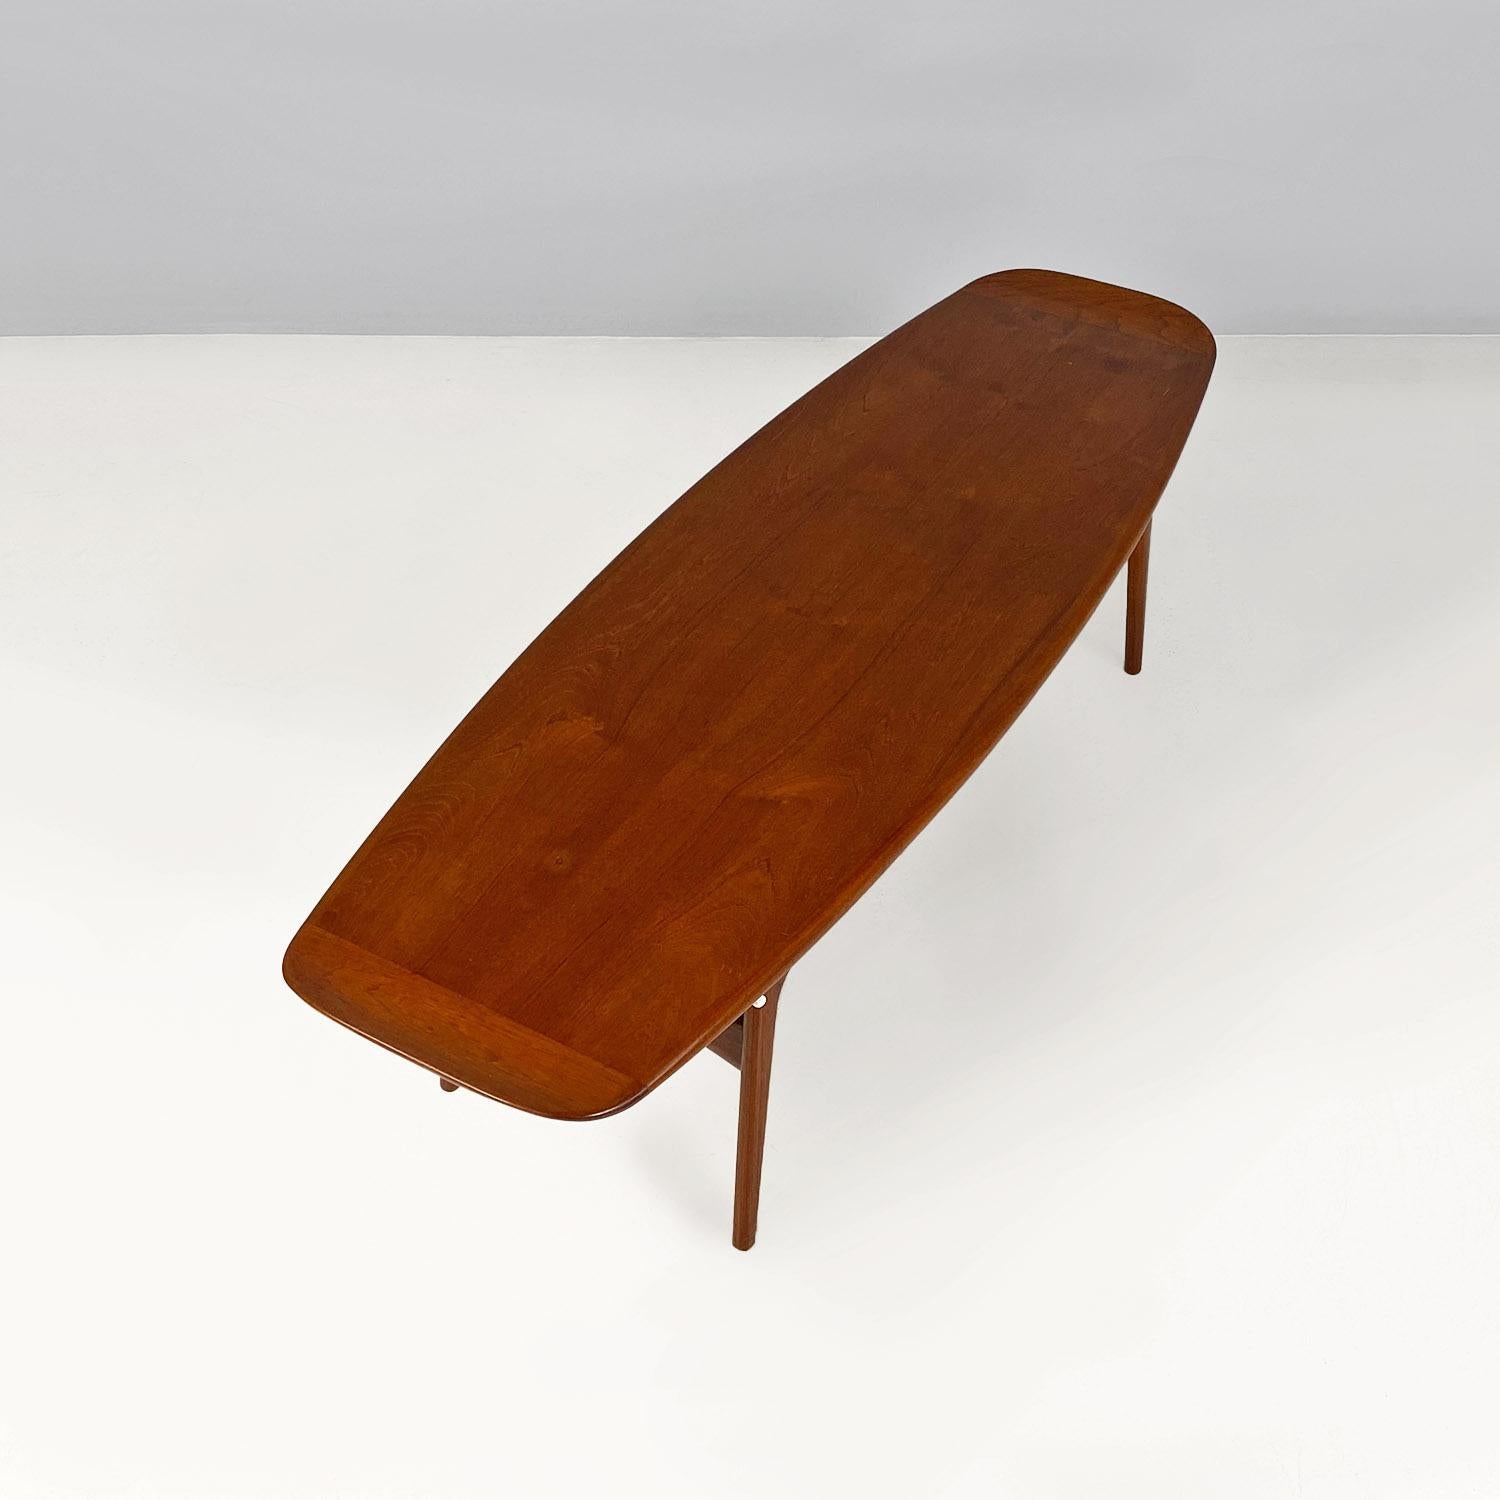 Mid-20th Century Danish mid-century teak surfboard table by Hovmand-Olsen for Mogens Kold, 1960s For Sale